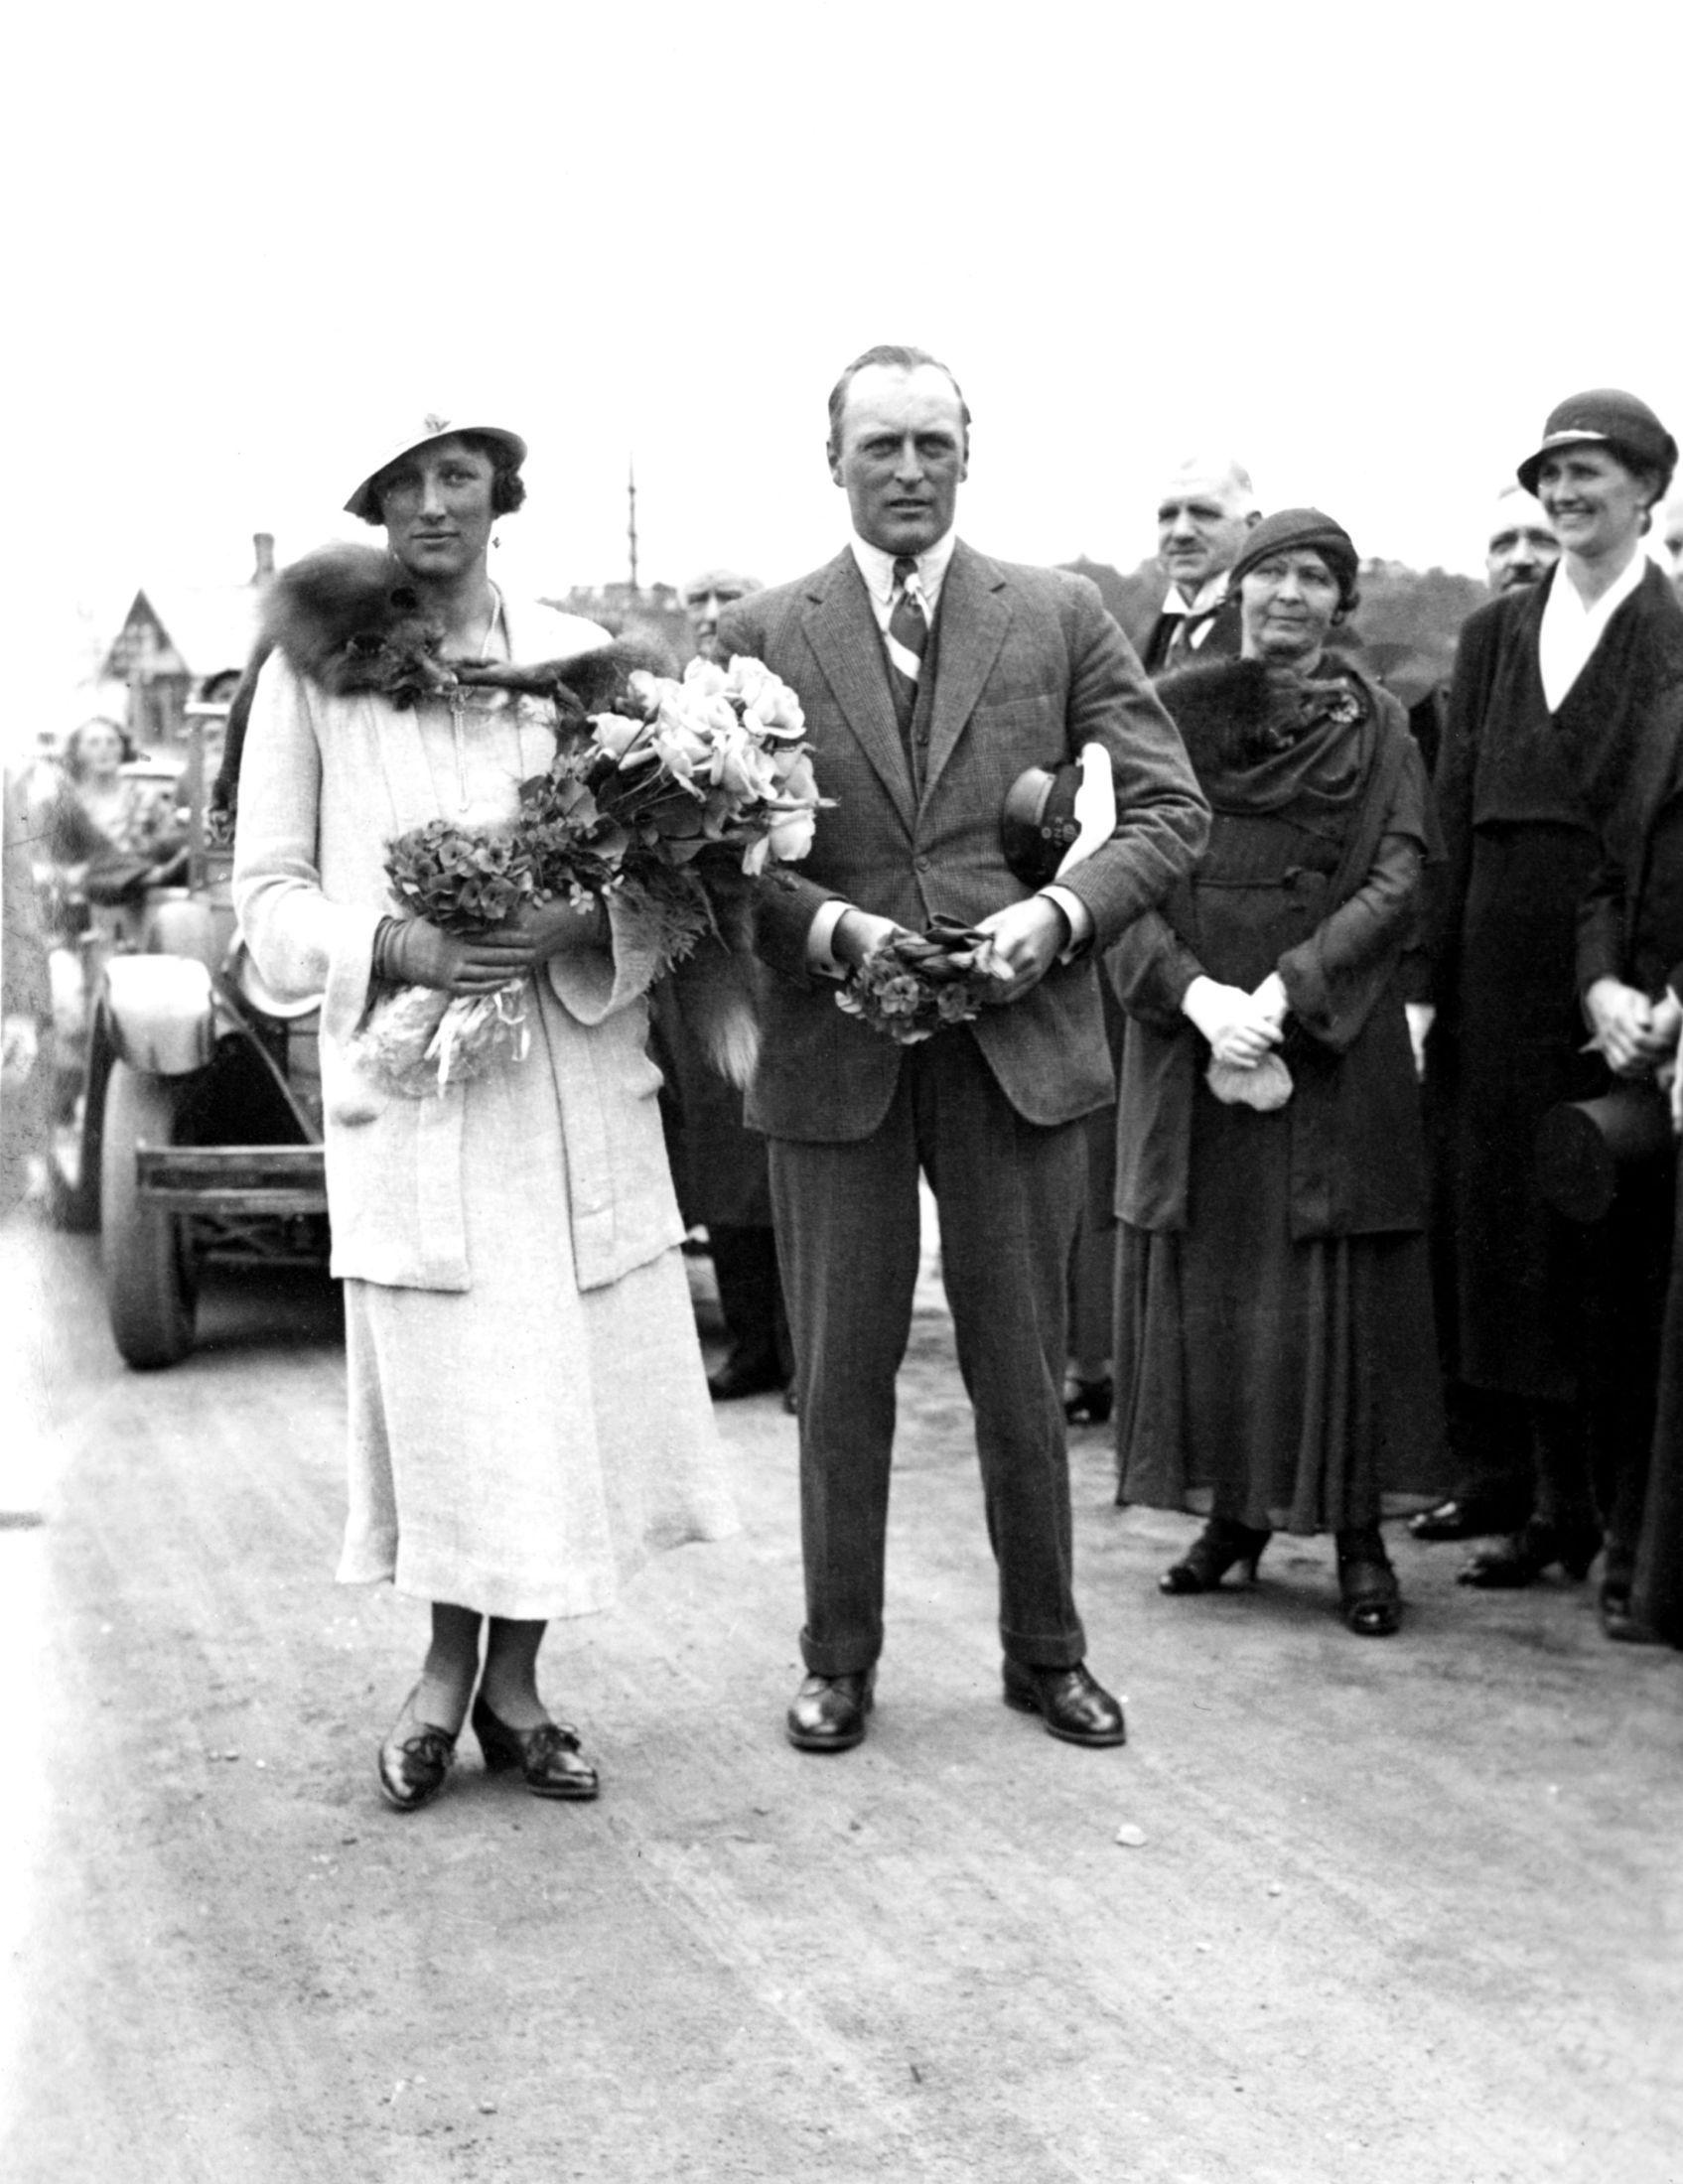 Kronprins Olav og Kronprinsesse Märtha besøker Ålesund i 1938. Her de to sammen, på spasertur i byen. Märtha med lys, moteriktig drakt. Foto: Arne Sylte/NTB